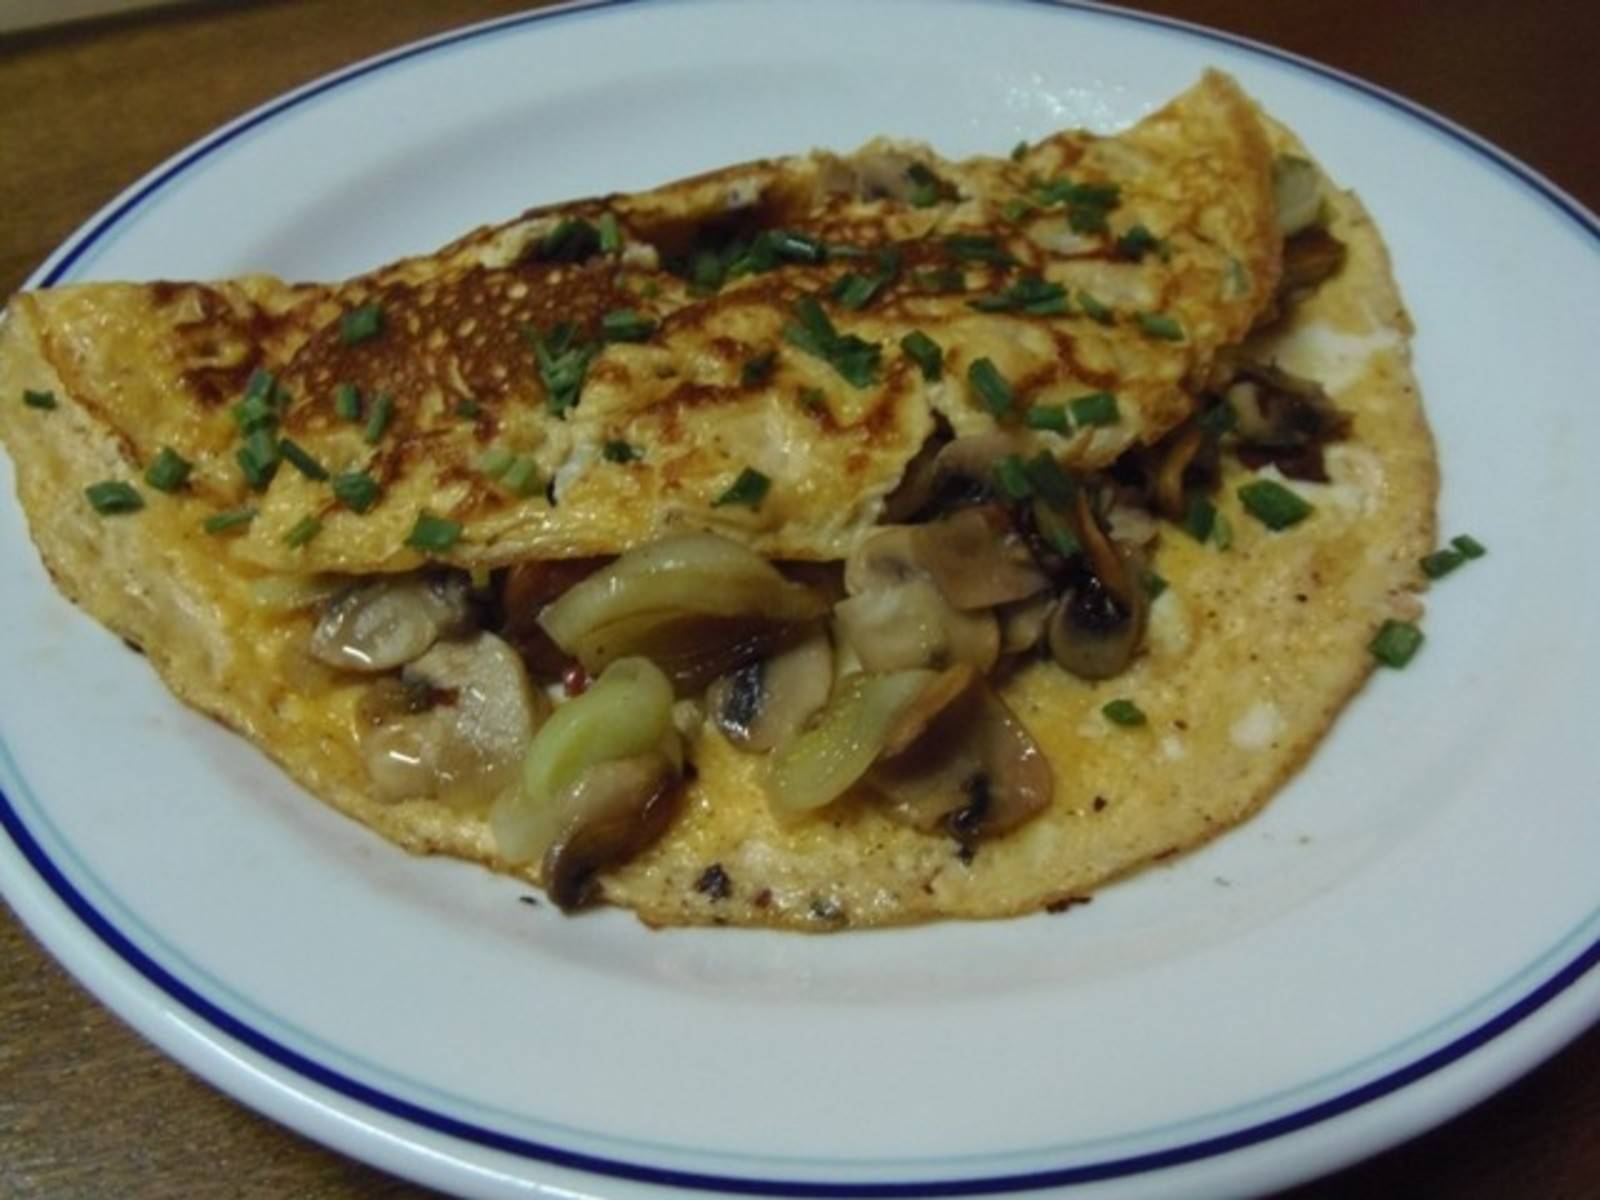 Champignon-Omelette mit Speck